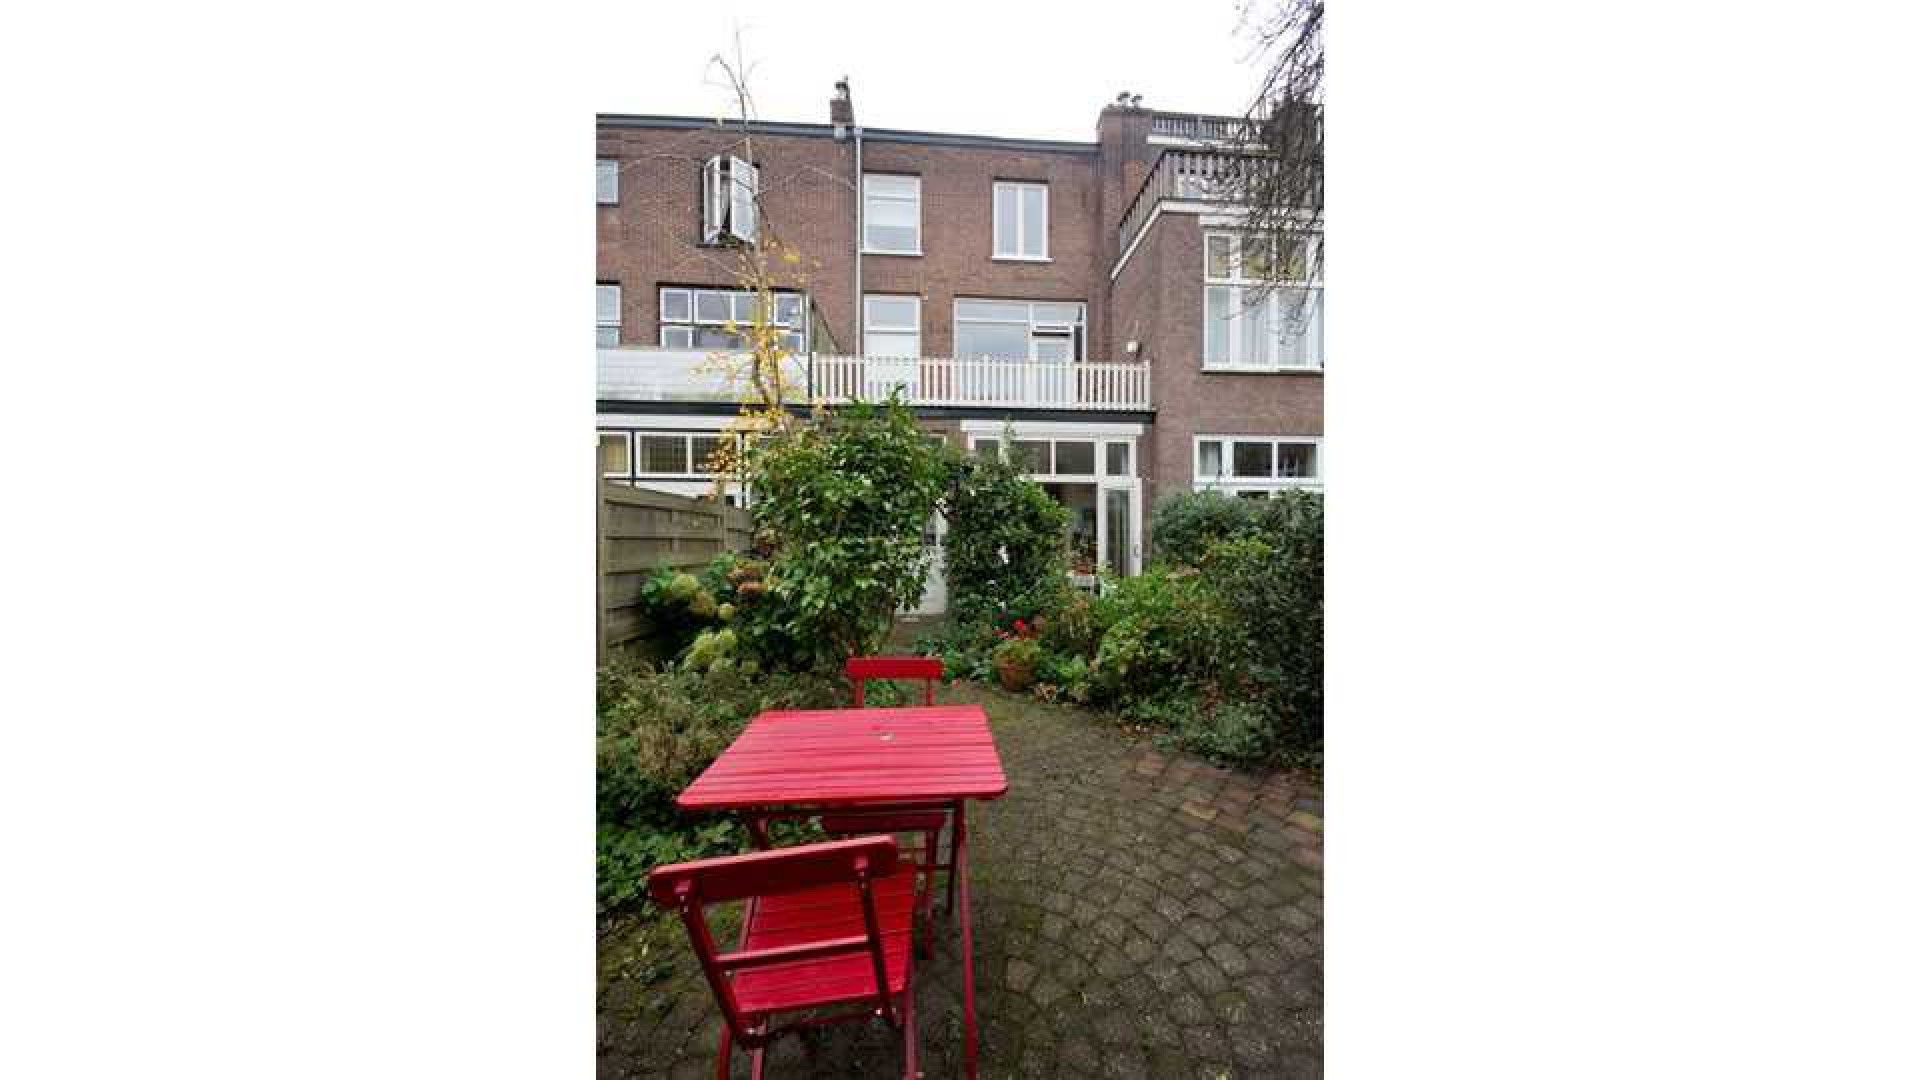 Familie zet huis Joost Zwagerman te koop. Zie foto's 18